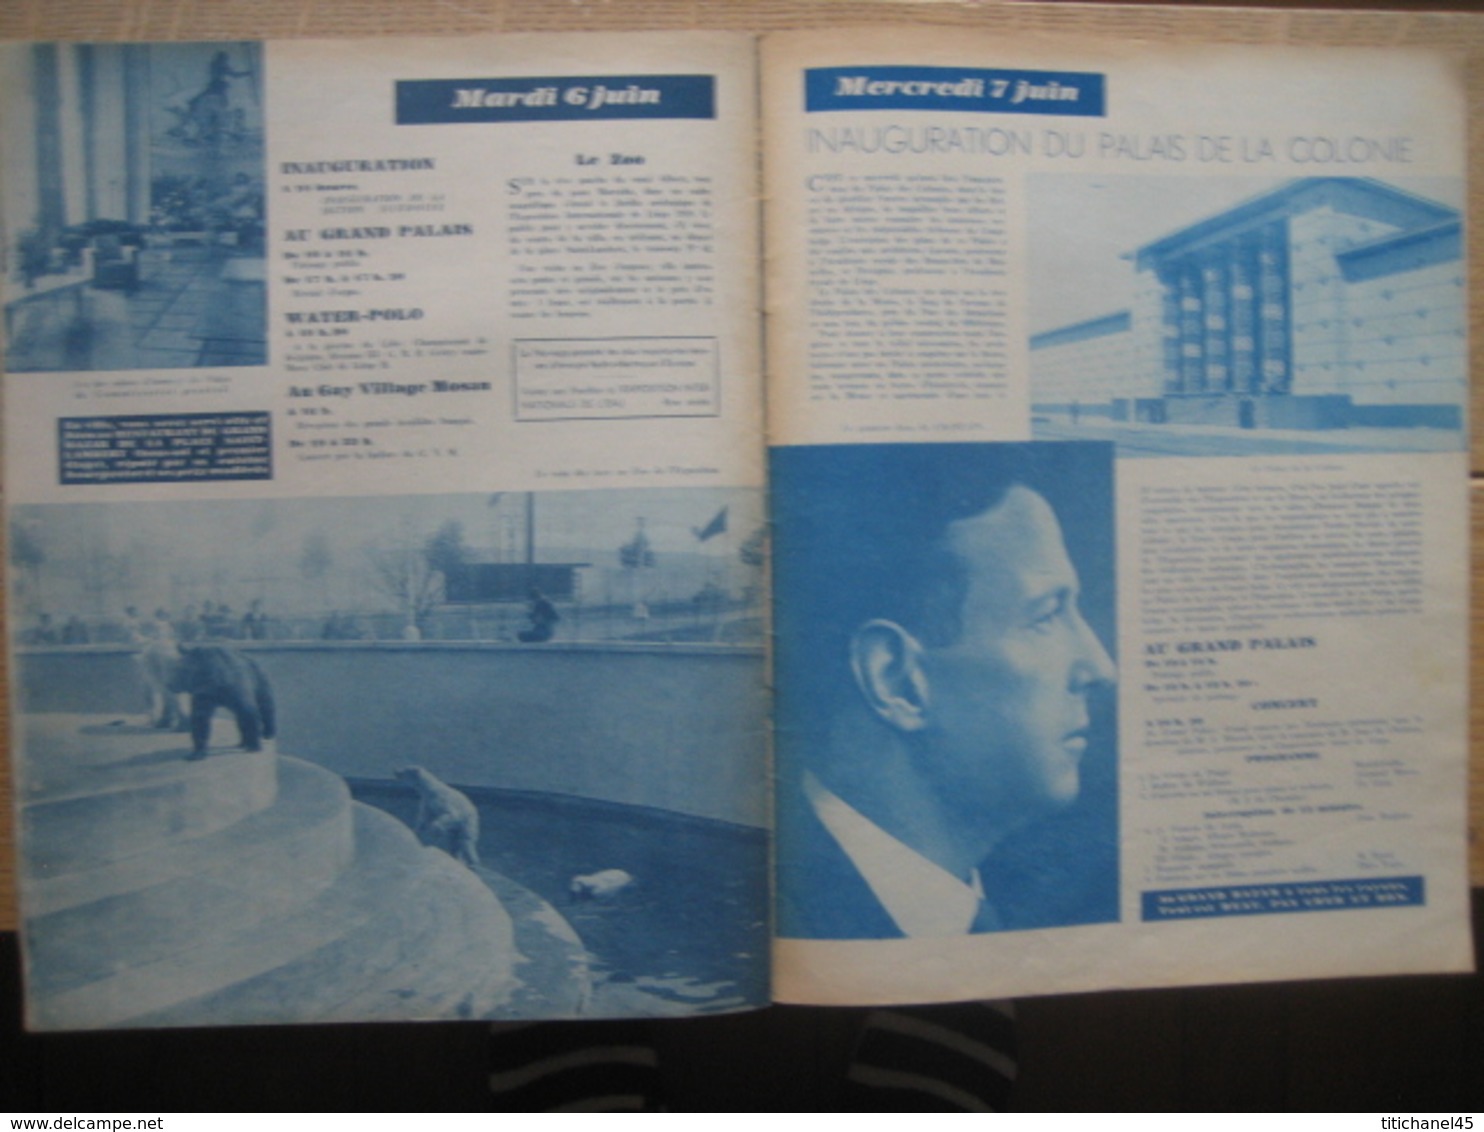 Programme Officiel de l'EXPOSITION INTERNATIONALE DE L'EAU, LIEGE 1939 - n°3 - 24 PAGES